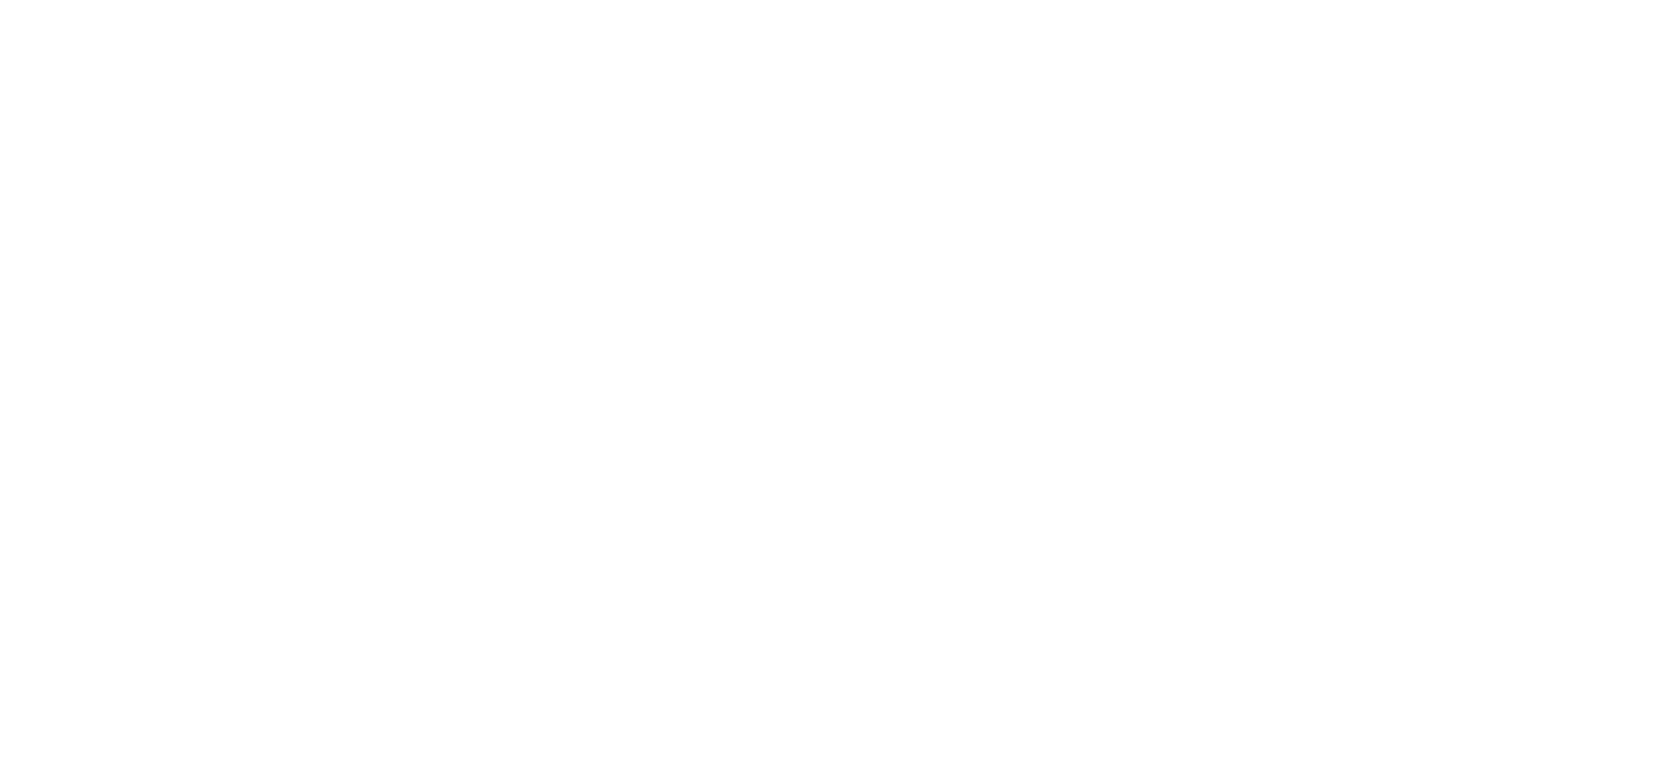 Профиль алюминиевый Flexy GIPS GARDINA2 01 для потолков из гипсокартона: размер, вид, применение, способ монтажа в Москве, СПБ и России